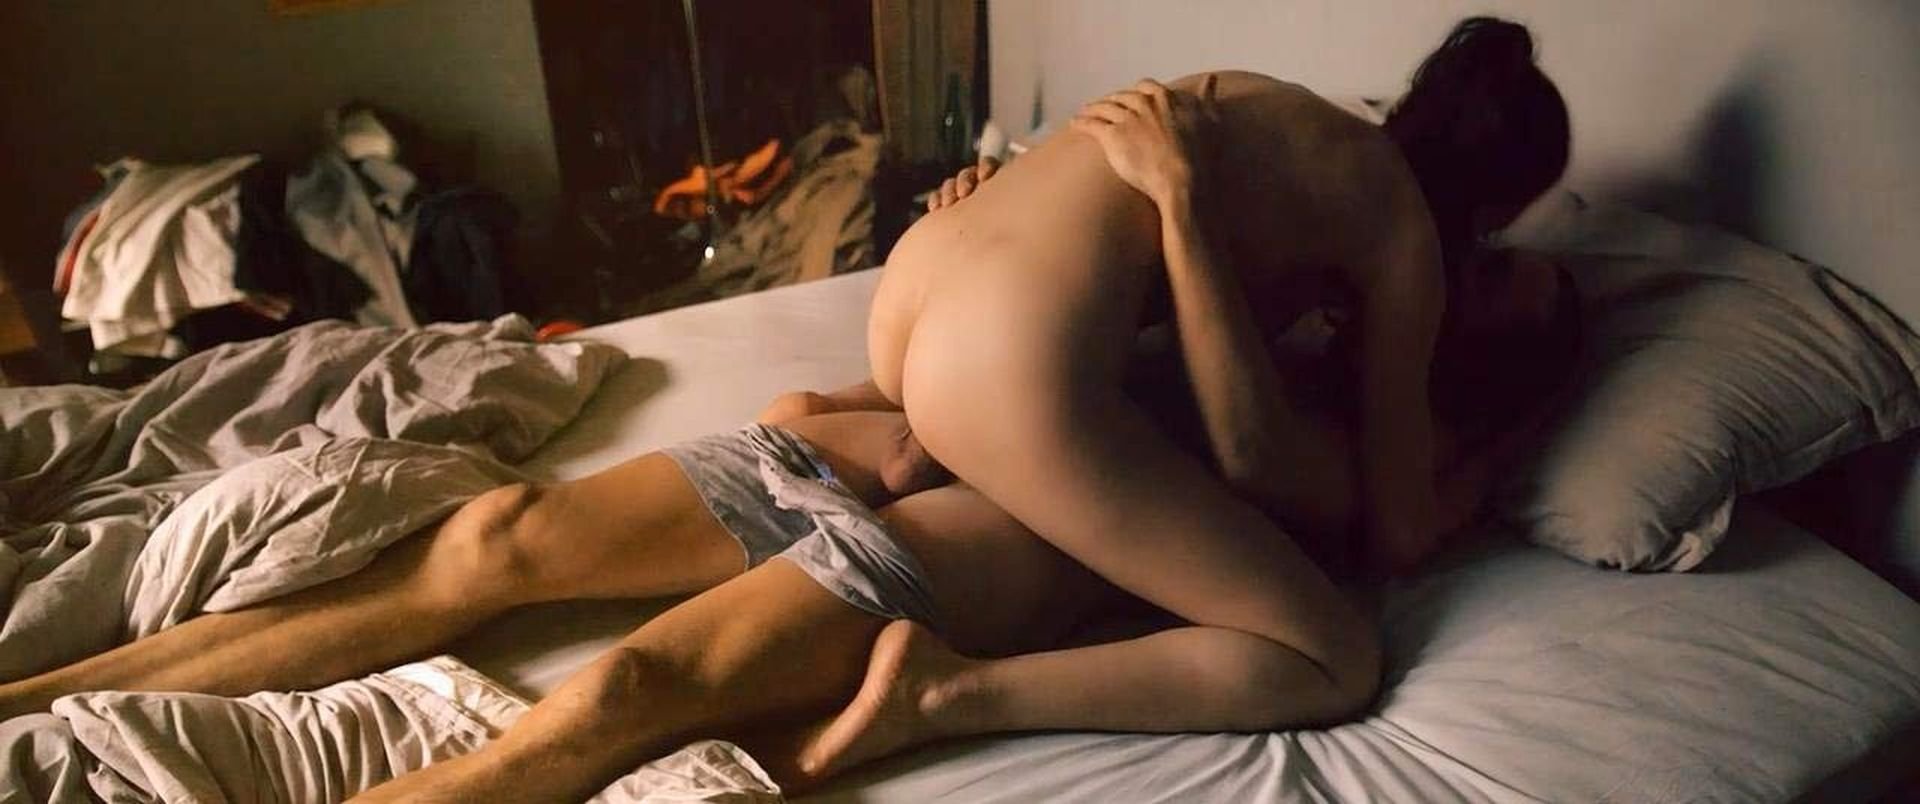 A Padok Közt Kutyapózban Baszni Jó - Online szex videók pornó film